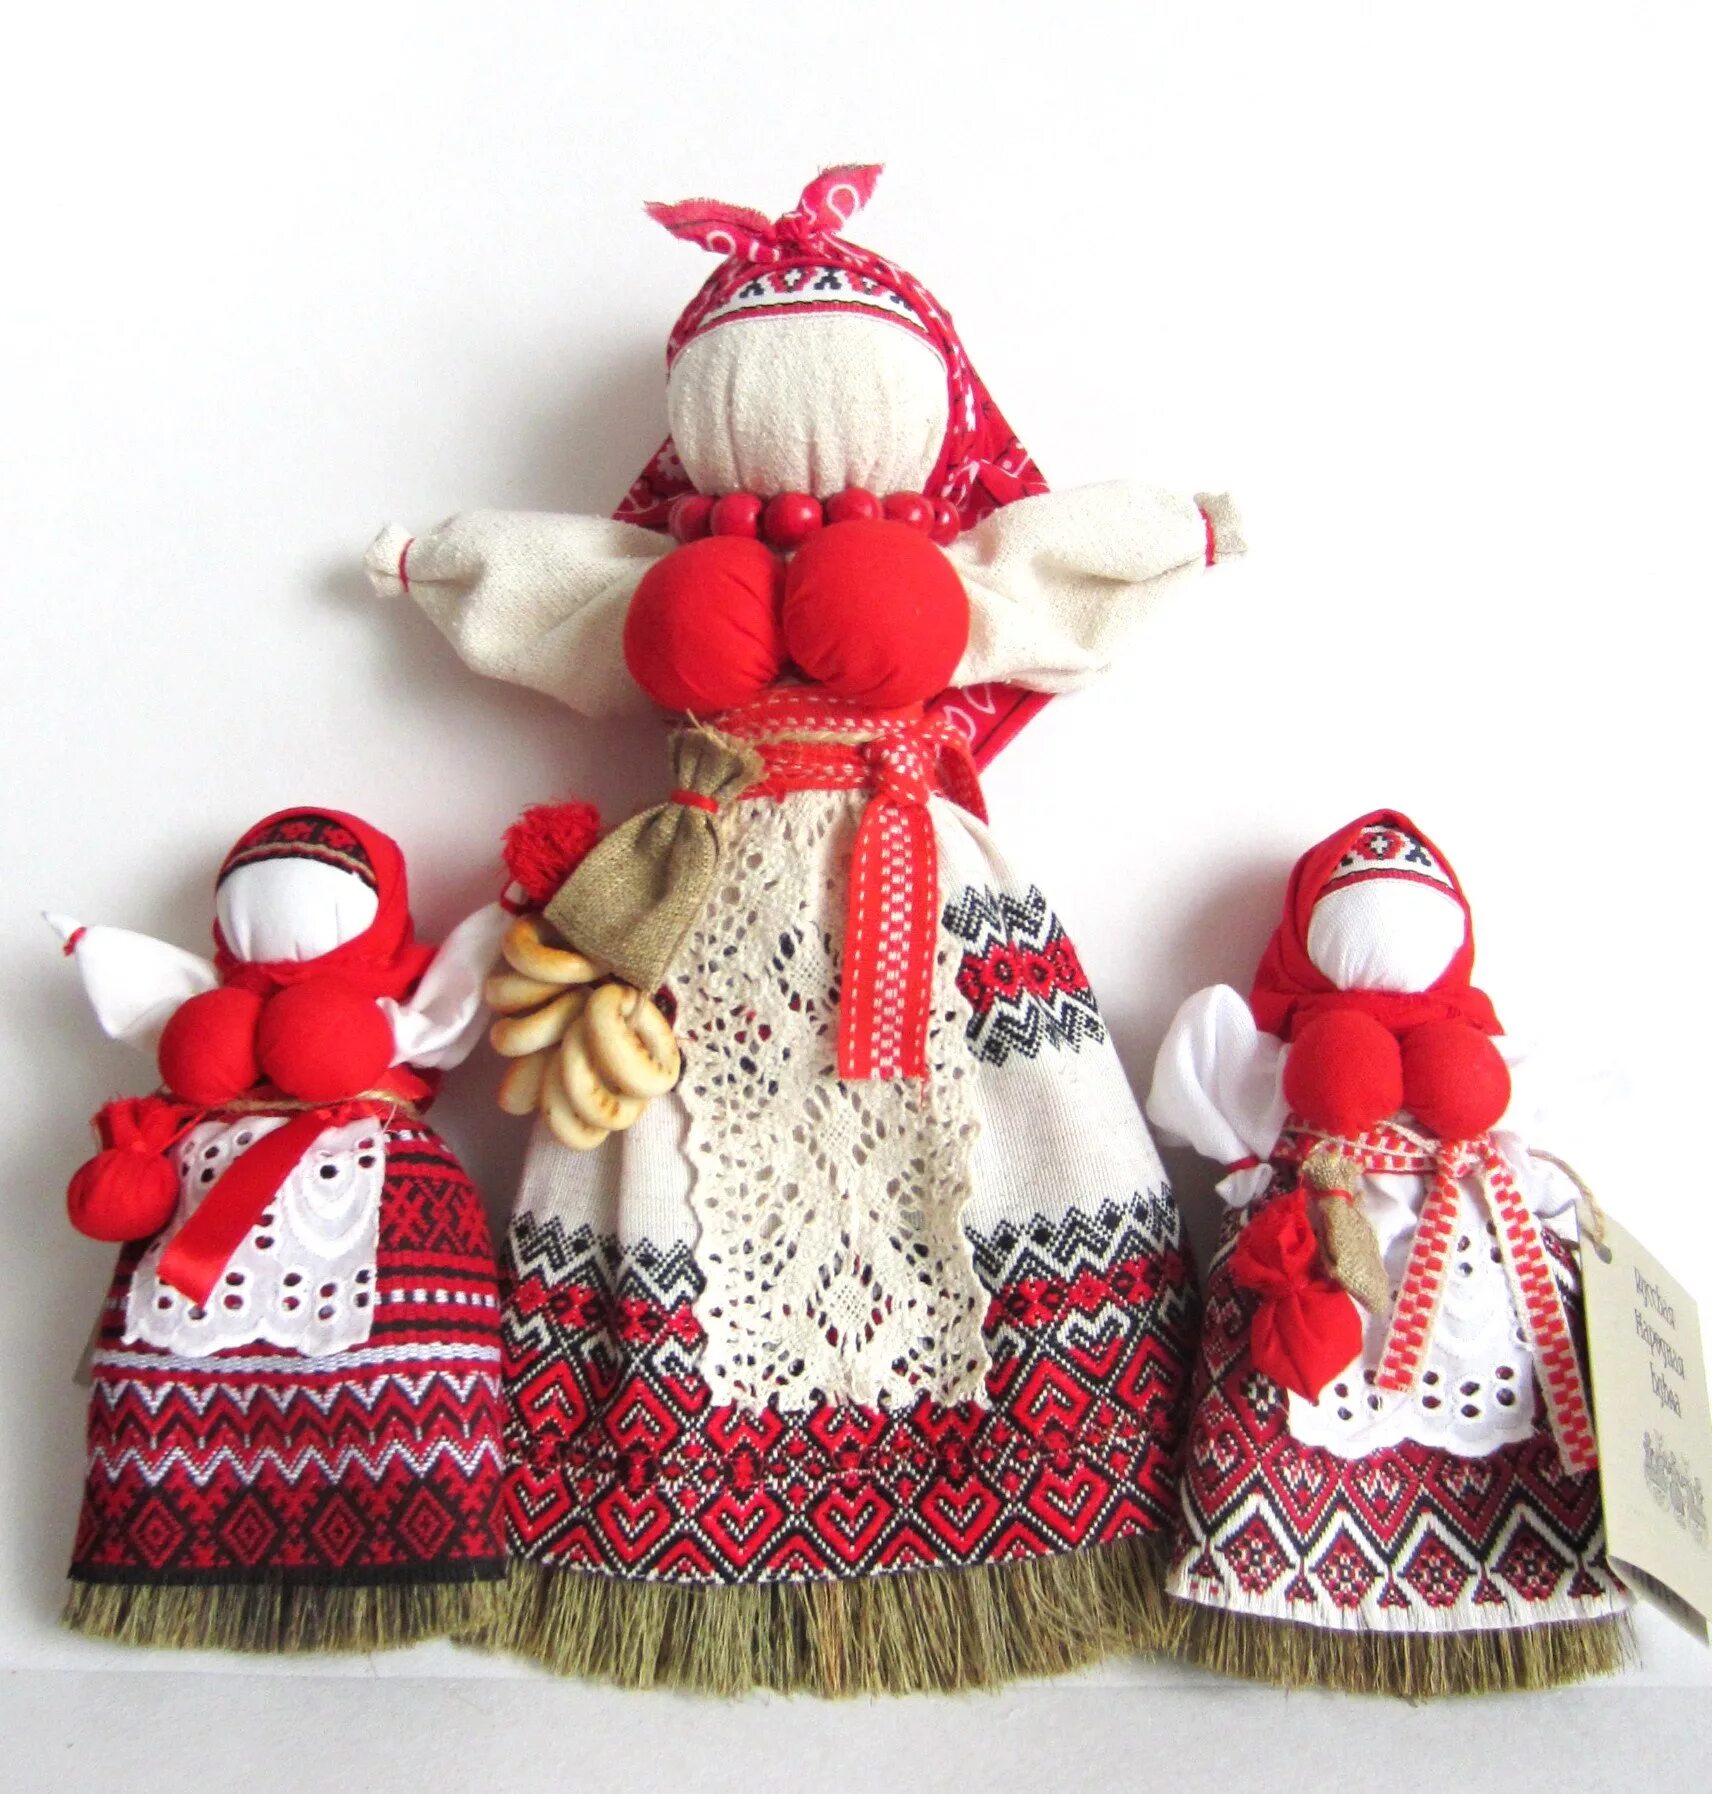 Русские народные игрушки куклы. Народная кукла. Обережные куклы. Народная тряпичная кукла. Народные куклы обереги.